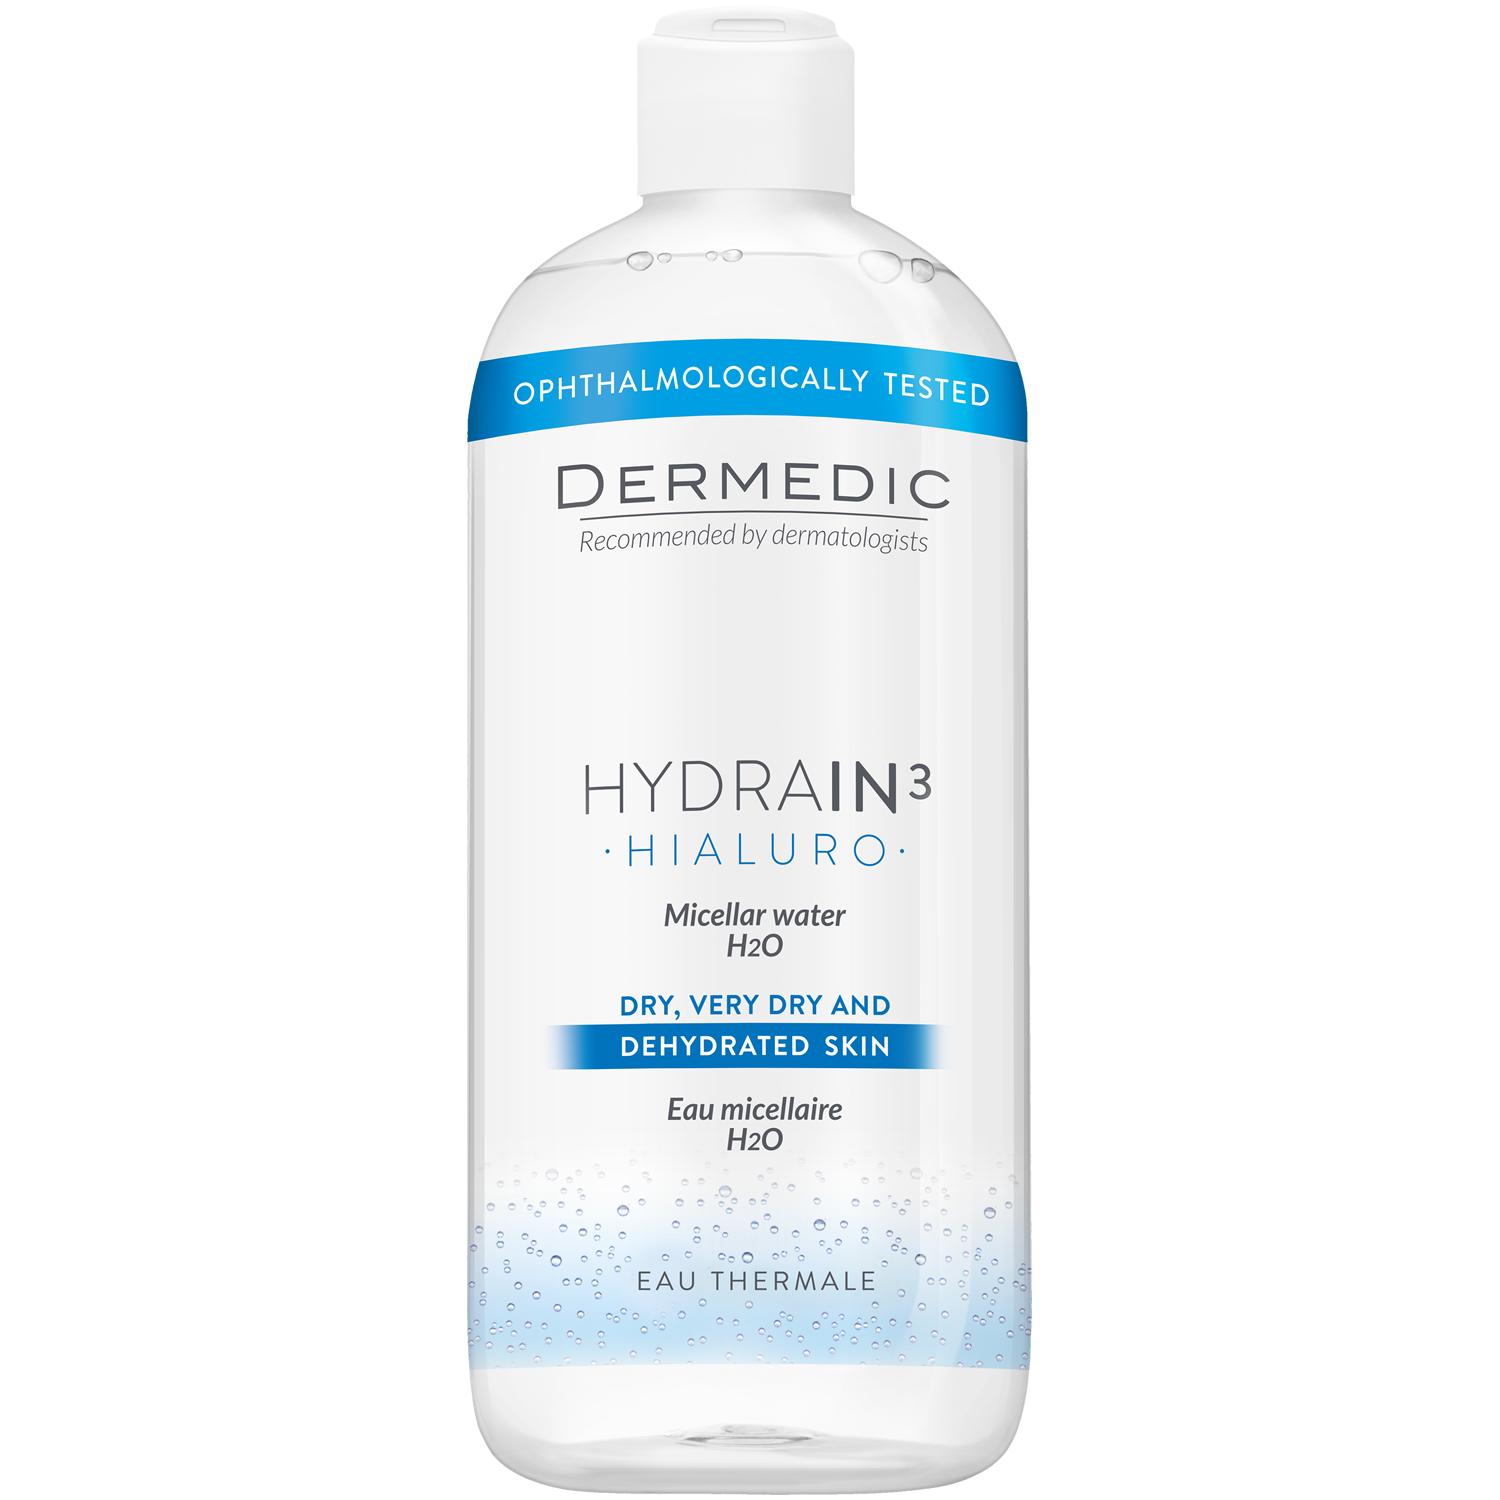 Dermedic Hydrain3 Hialuro, micelární voda H2O na obličej, 500 ml